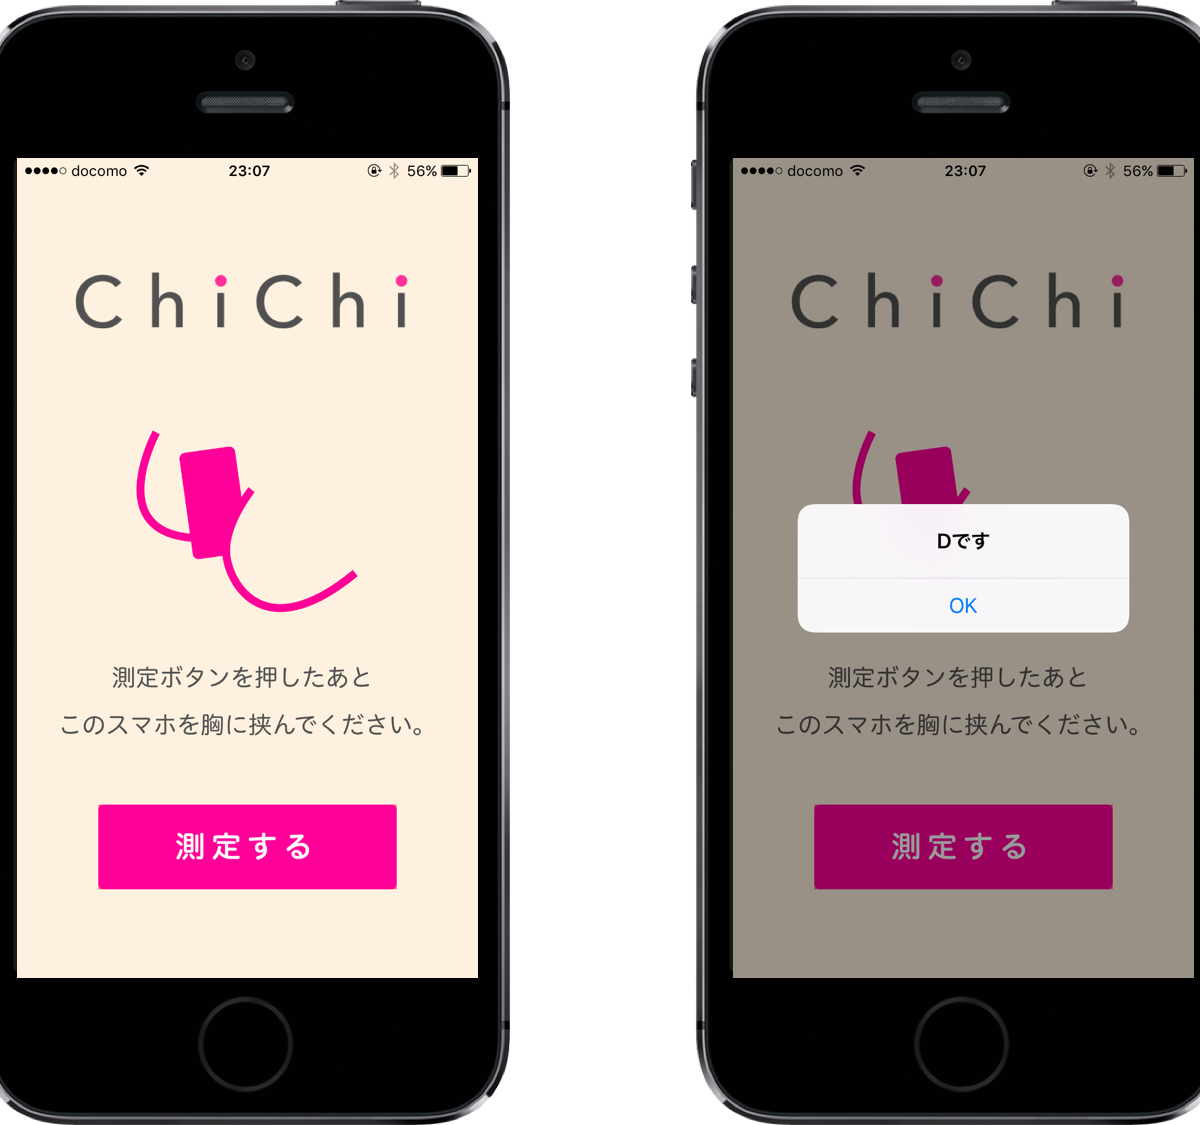 お店に行かなくても正しいバストサイズがわかる Chichi アプリとは Heart Closet 胸が大きな女性のためのメディア